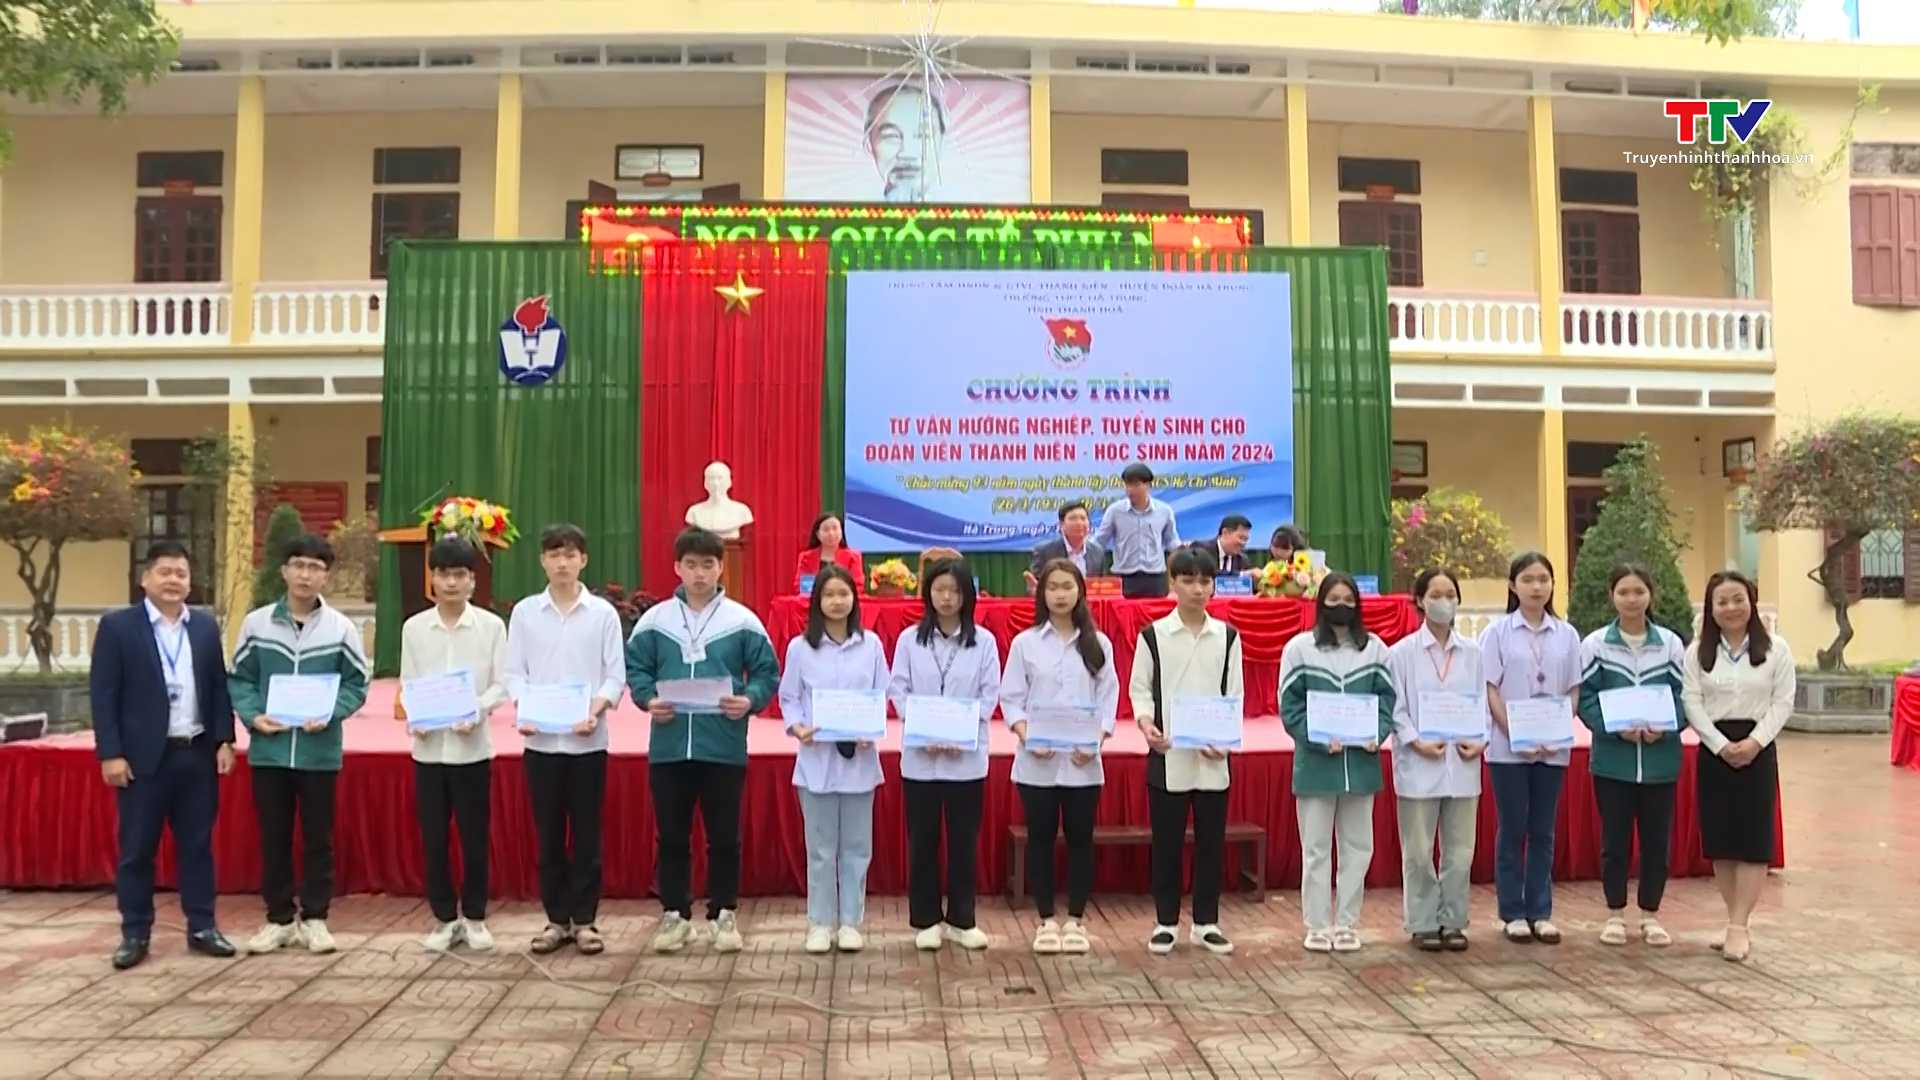 Hoạt động tư vấn hướng nghiệp, tuyển sinh cho Đoàn viên thanh niên – học sinh huyện Hà Trung năm 2024- Ảnh 2.